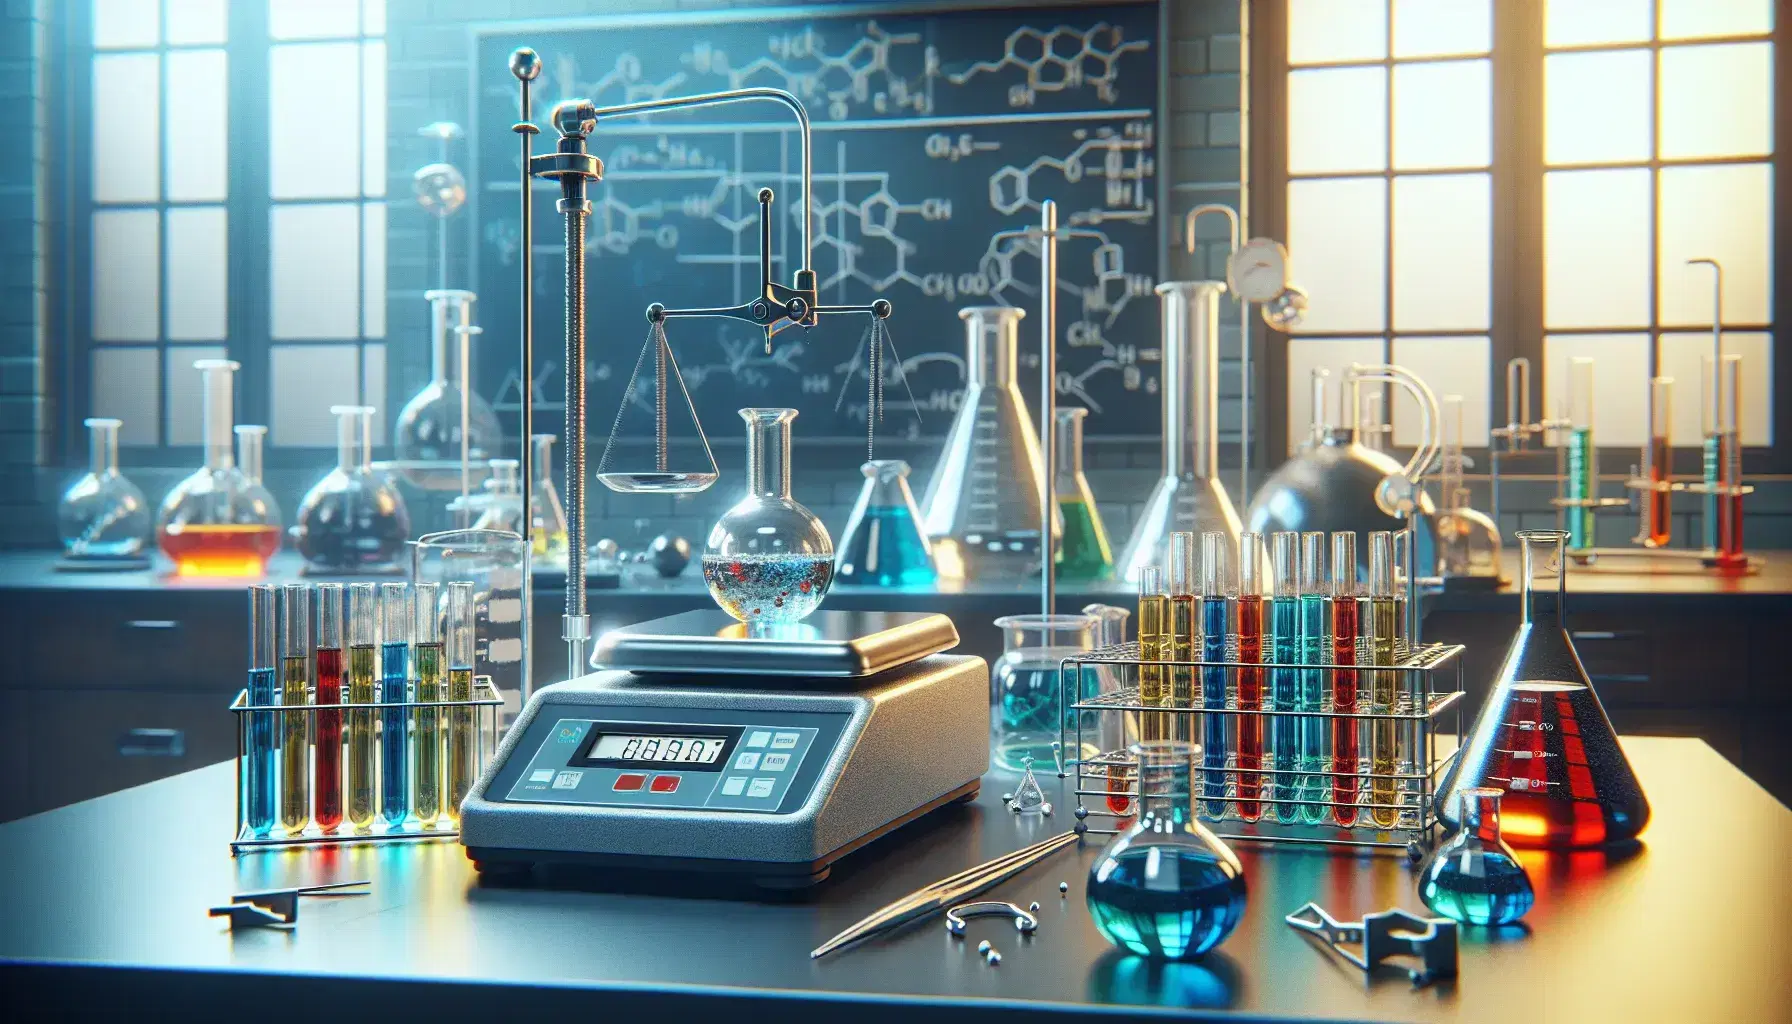 Laboratorio de química con balanza de precisión, probetas con líquidos de colores, matraz Erlenmeyer y mechero Bunsen apagado.